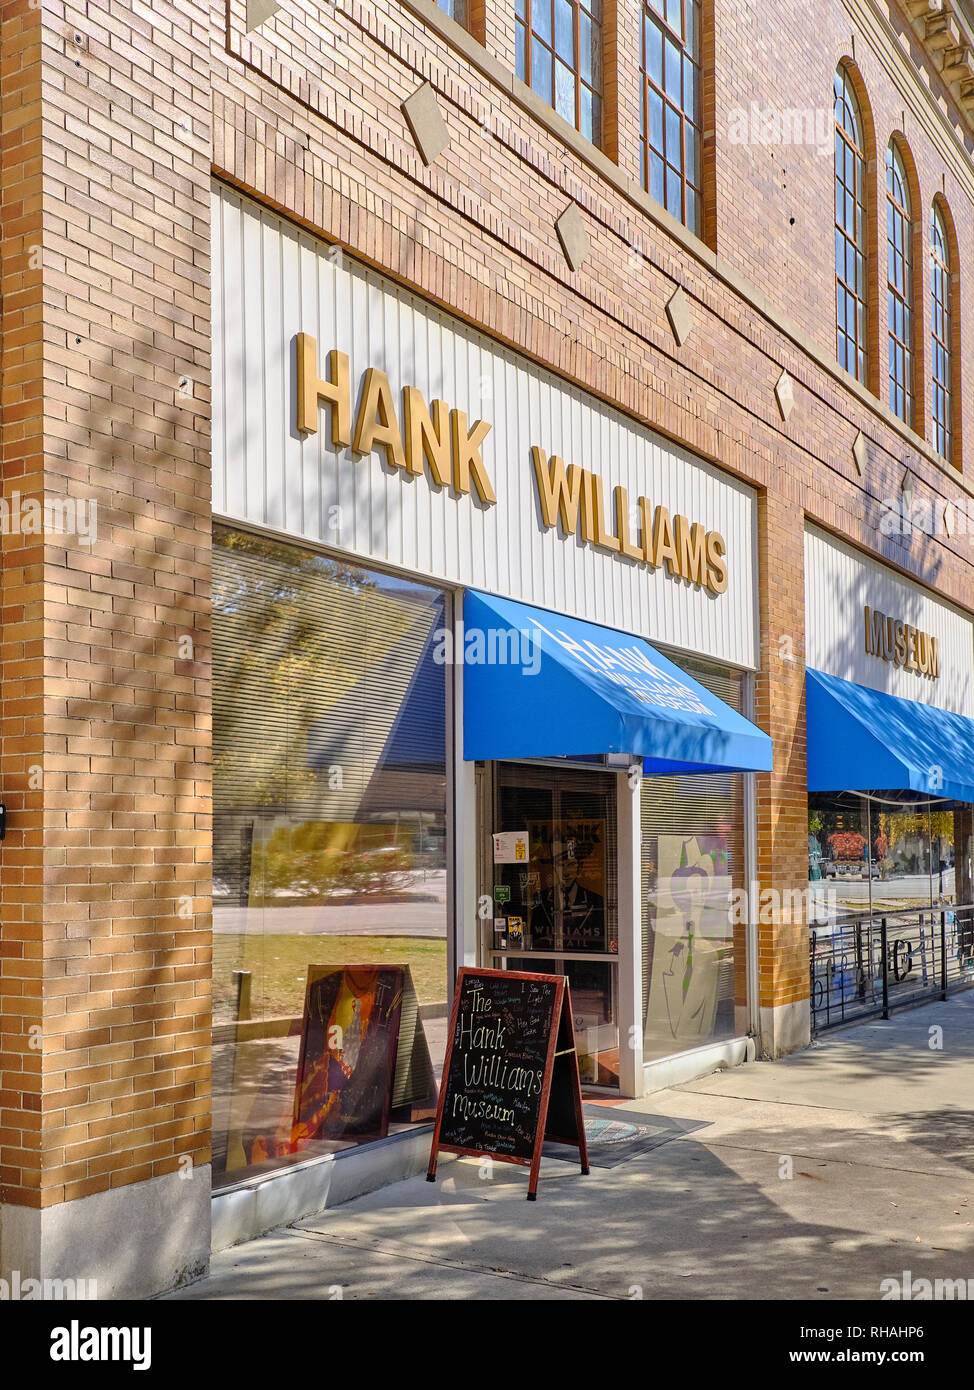 Hank Williams Museum, ein Country Western Musik Legende, äußerer Eingang auf Commerce Street in der Innenstadt von Montgomery Alabama, USA. Stockfoto